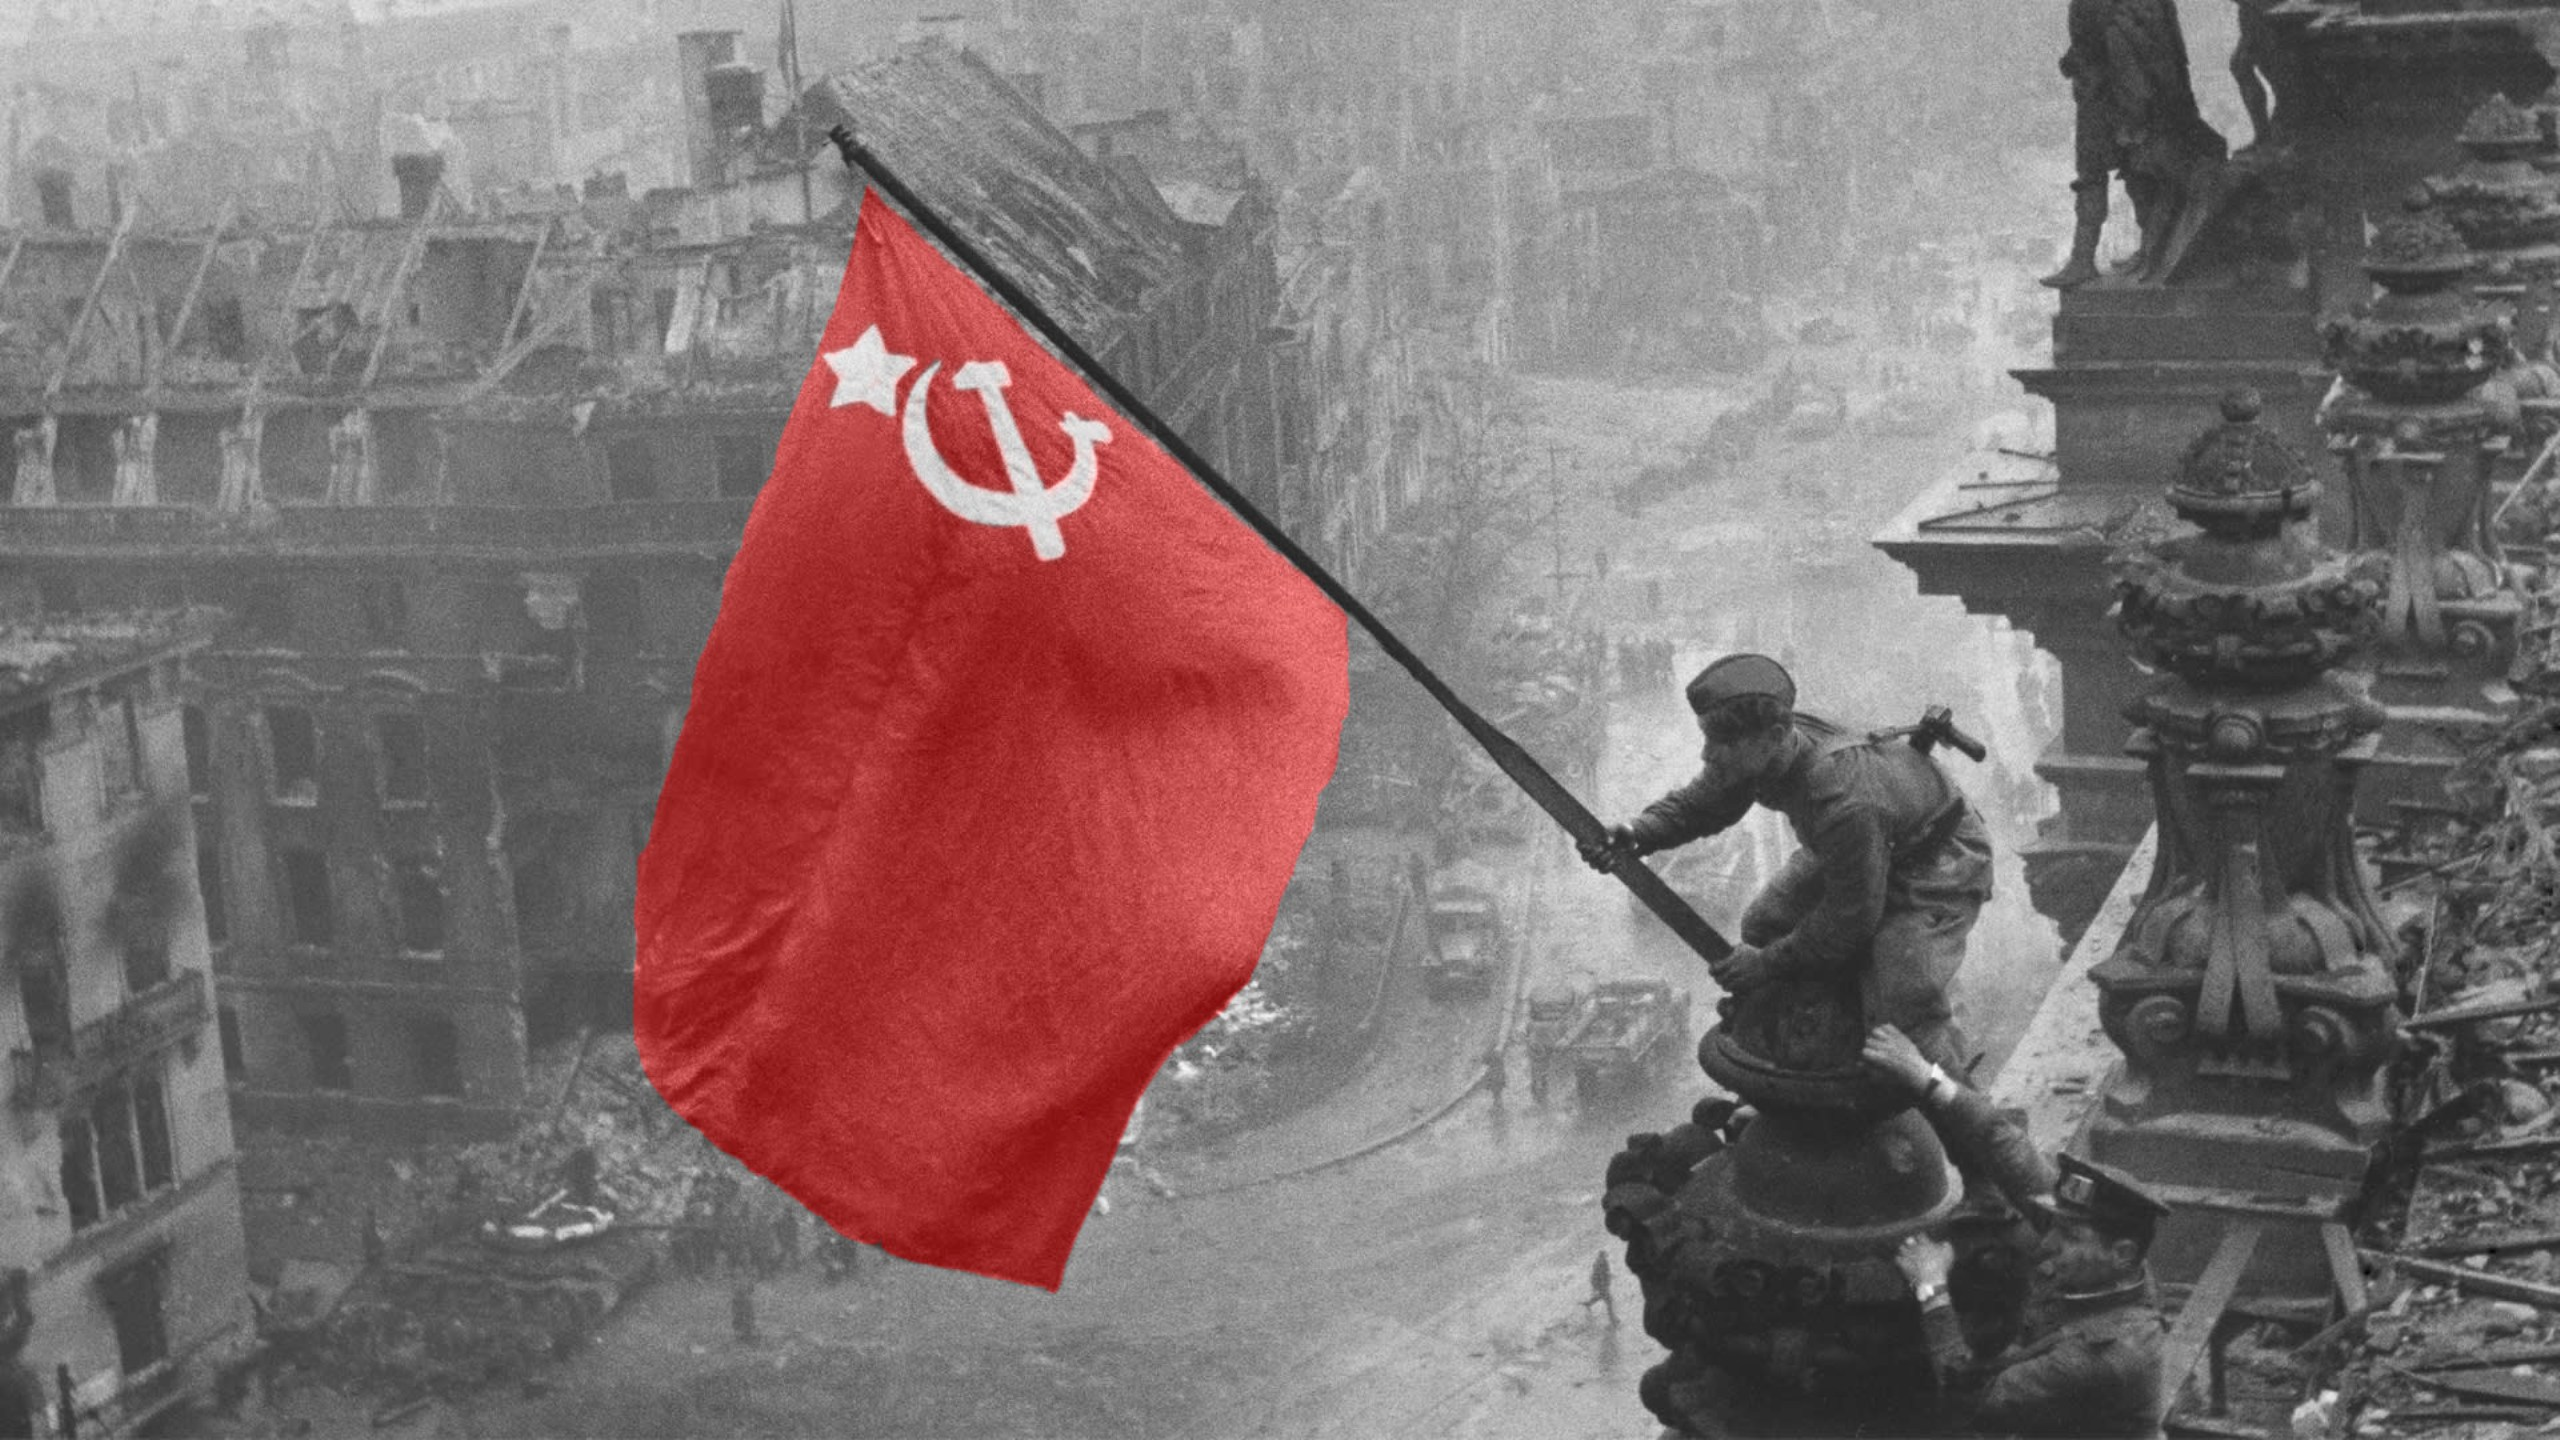 Röda arméns uppgång och fall